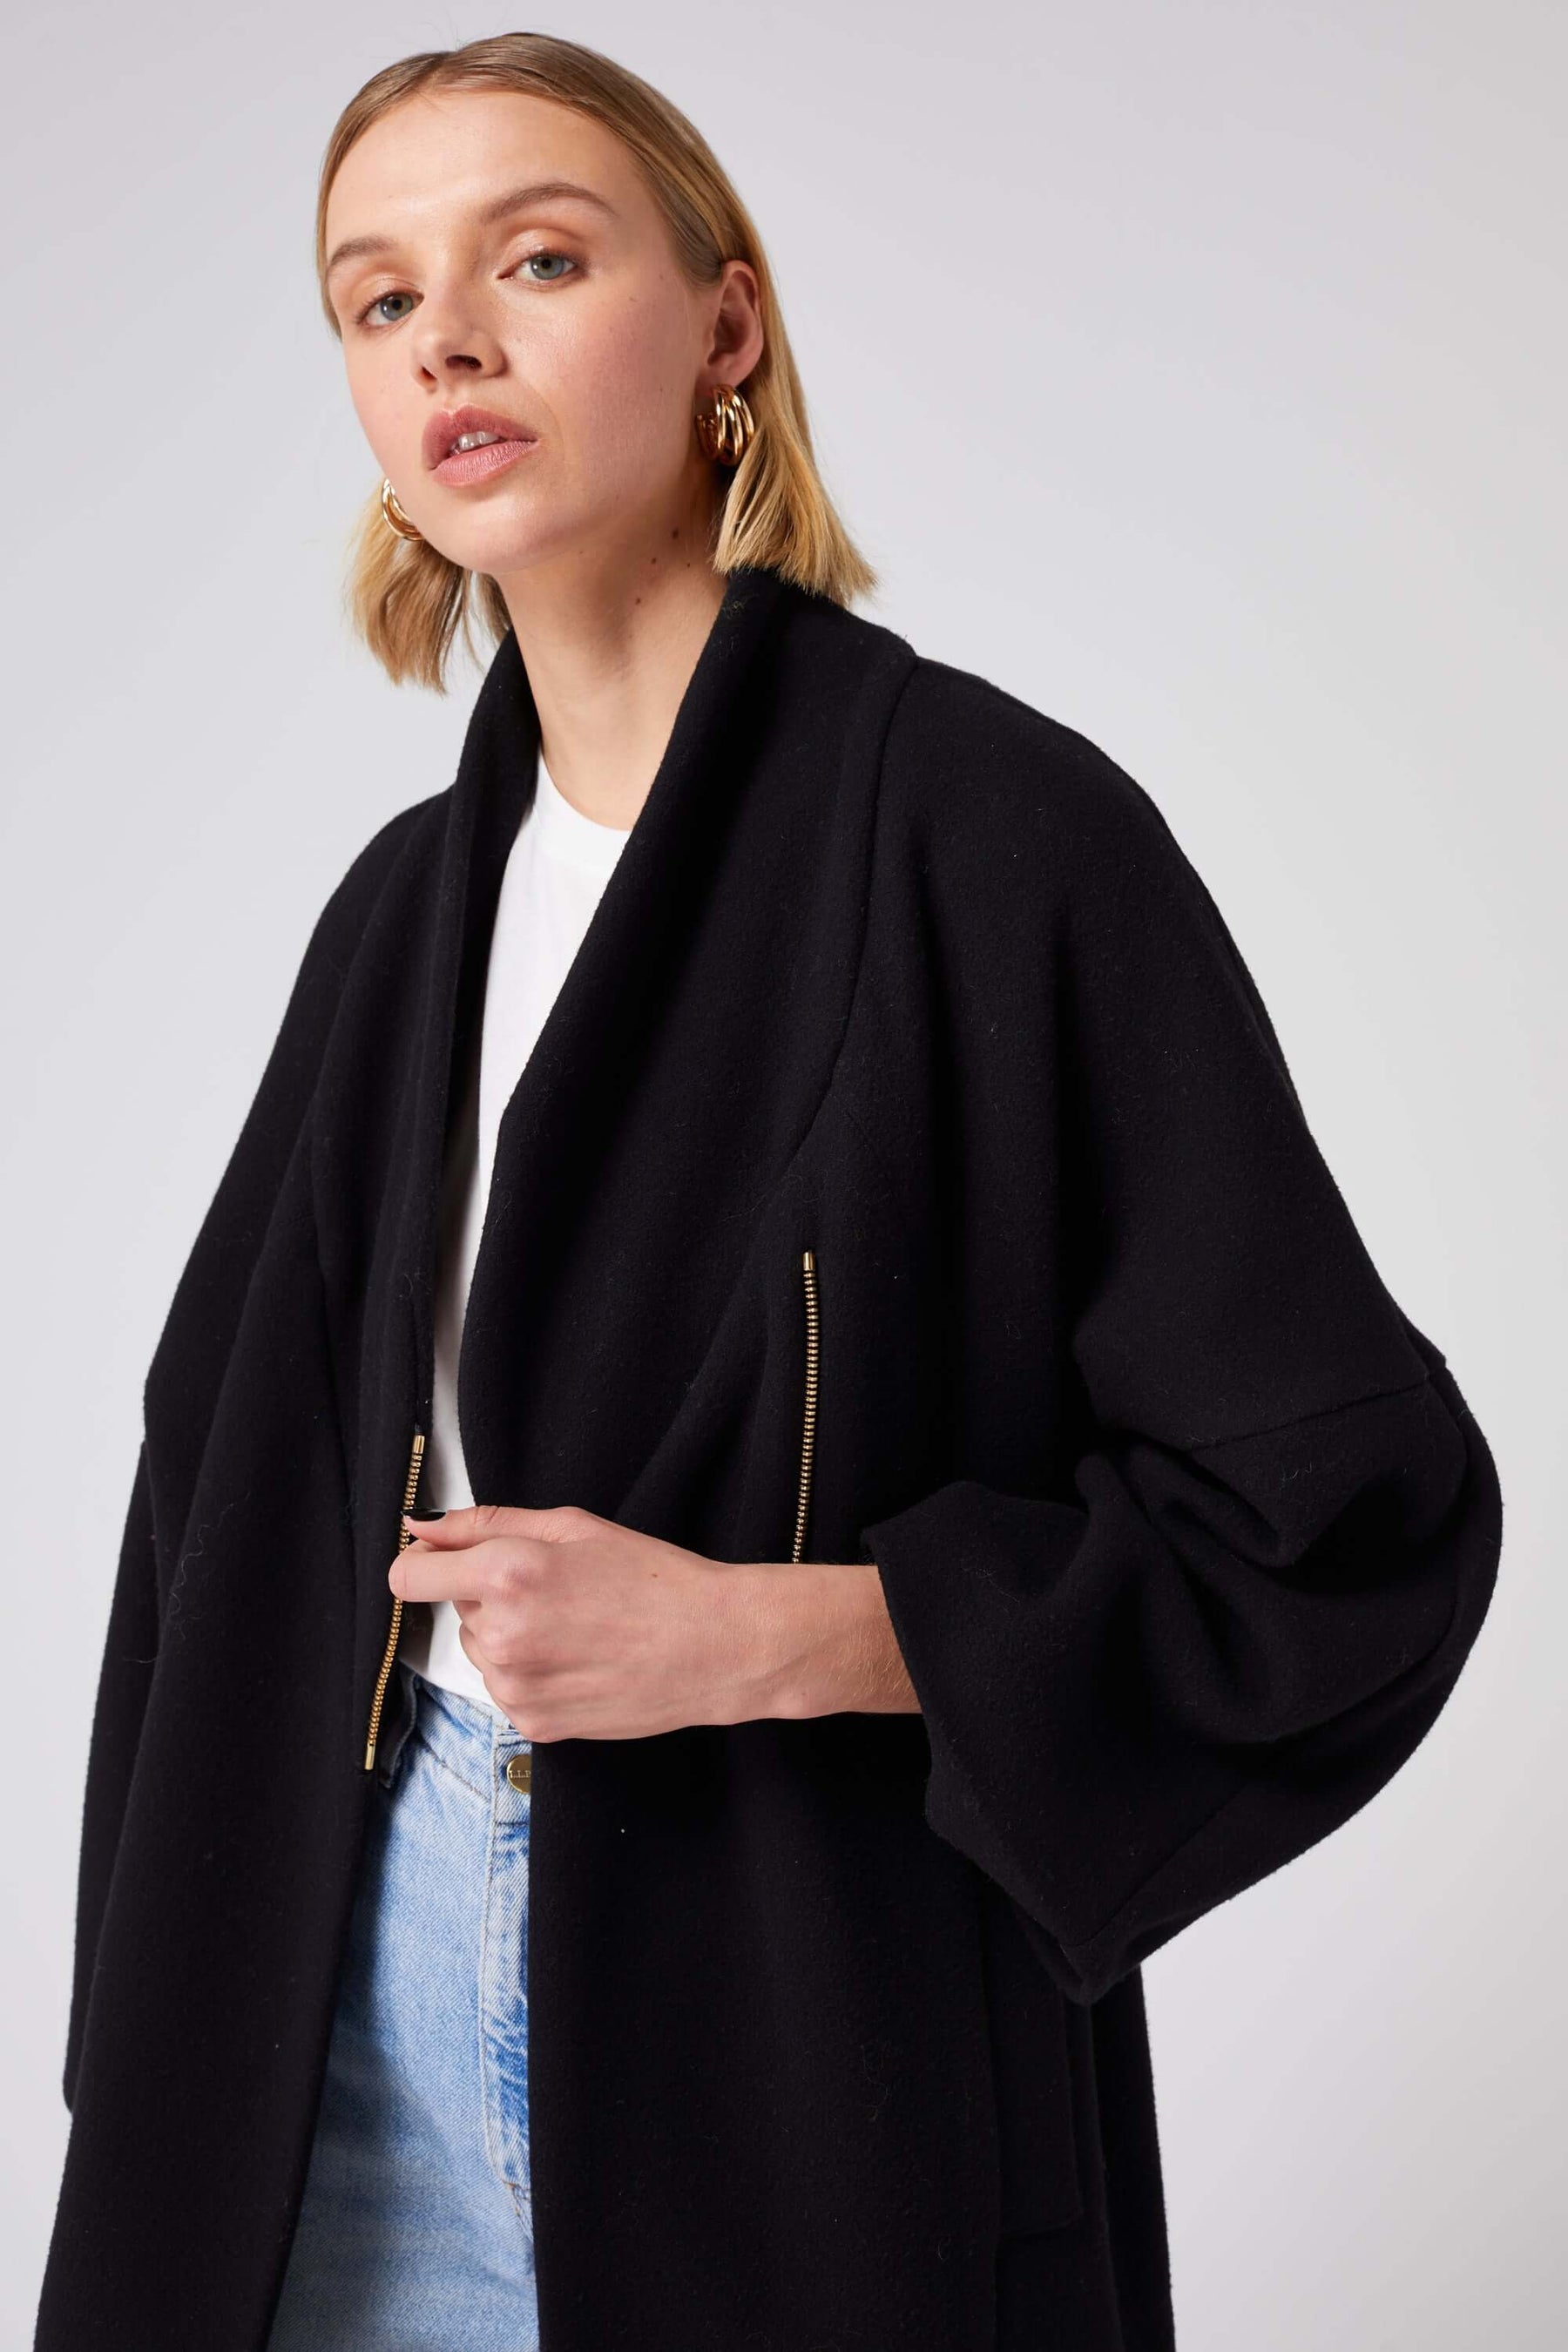 Eren coat in black woolen fabric and cashmere